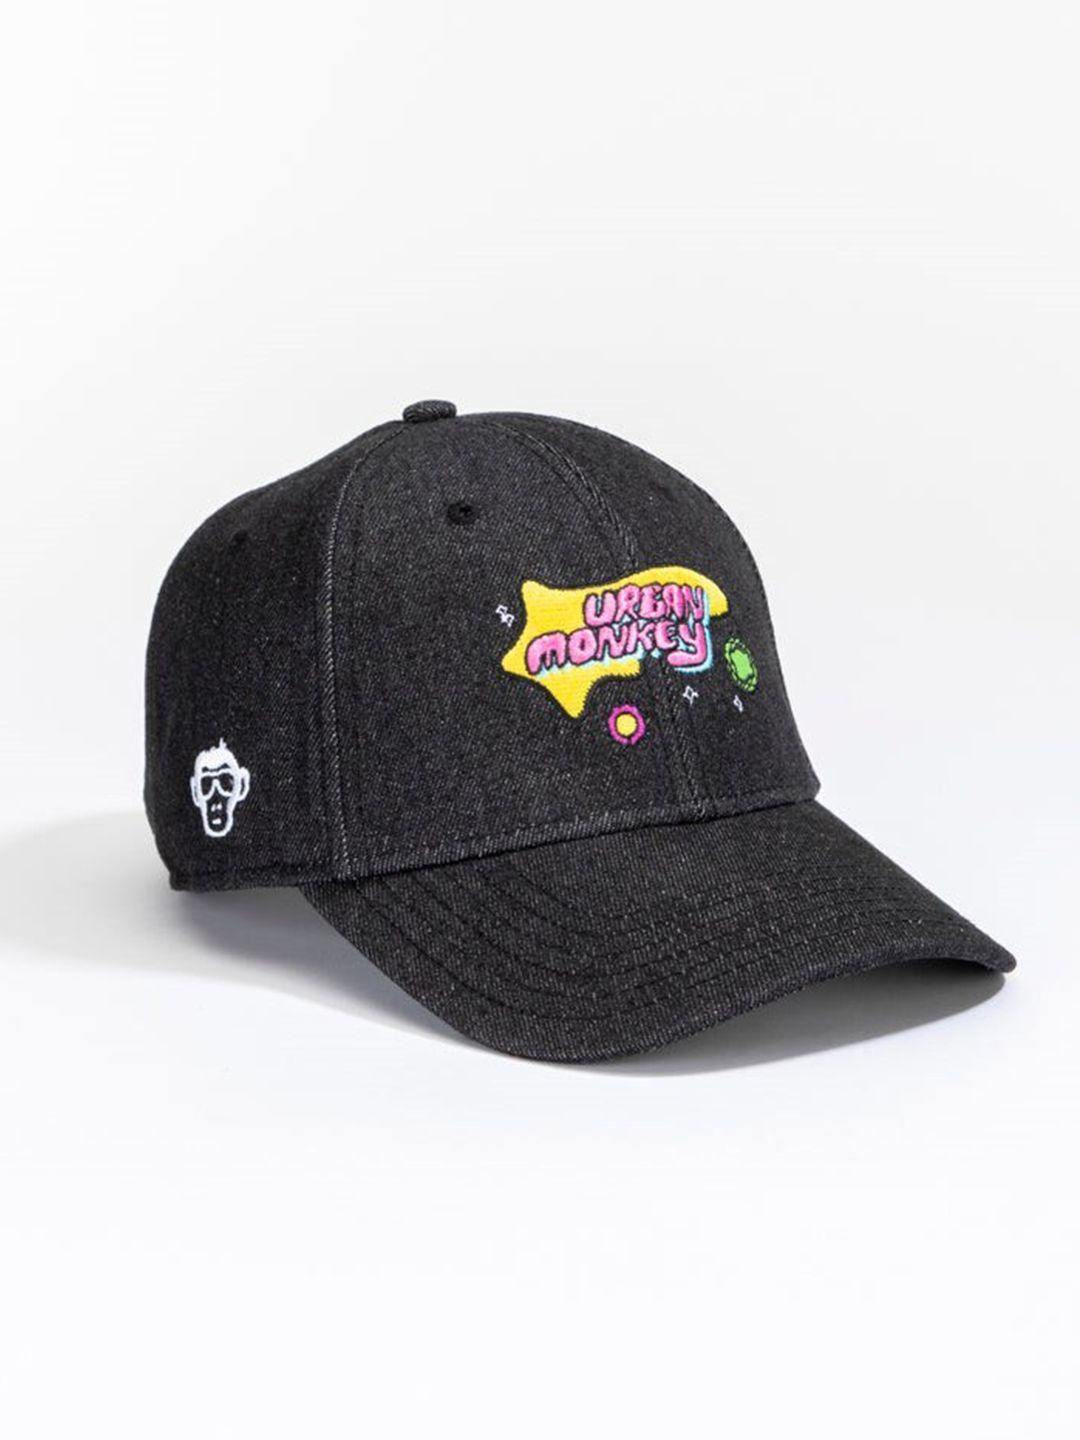 urban monkey unisex embroidered baseball cap